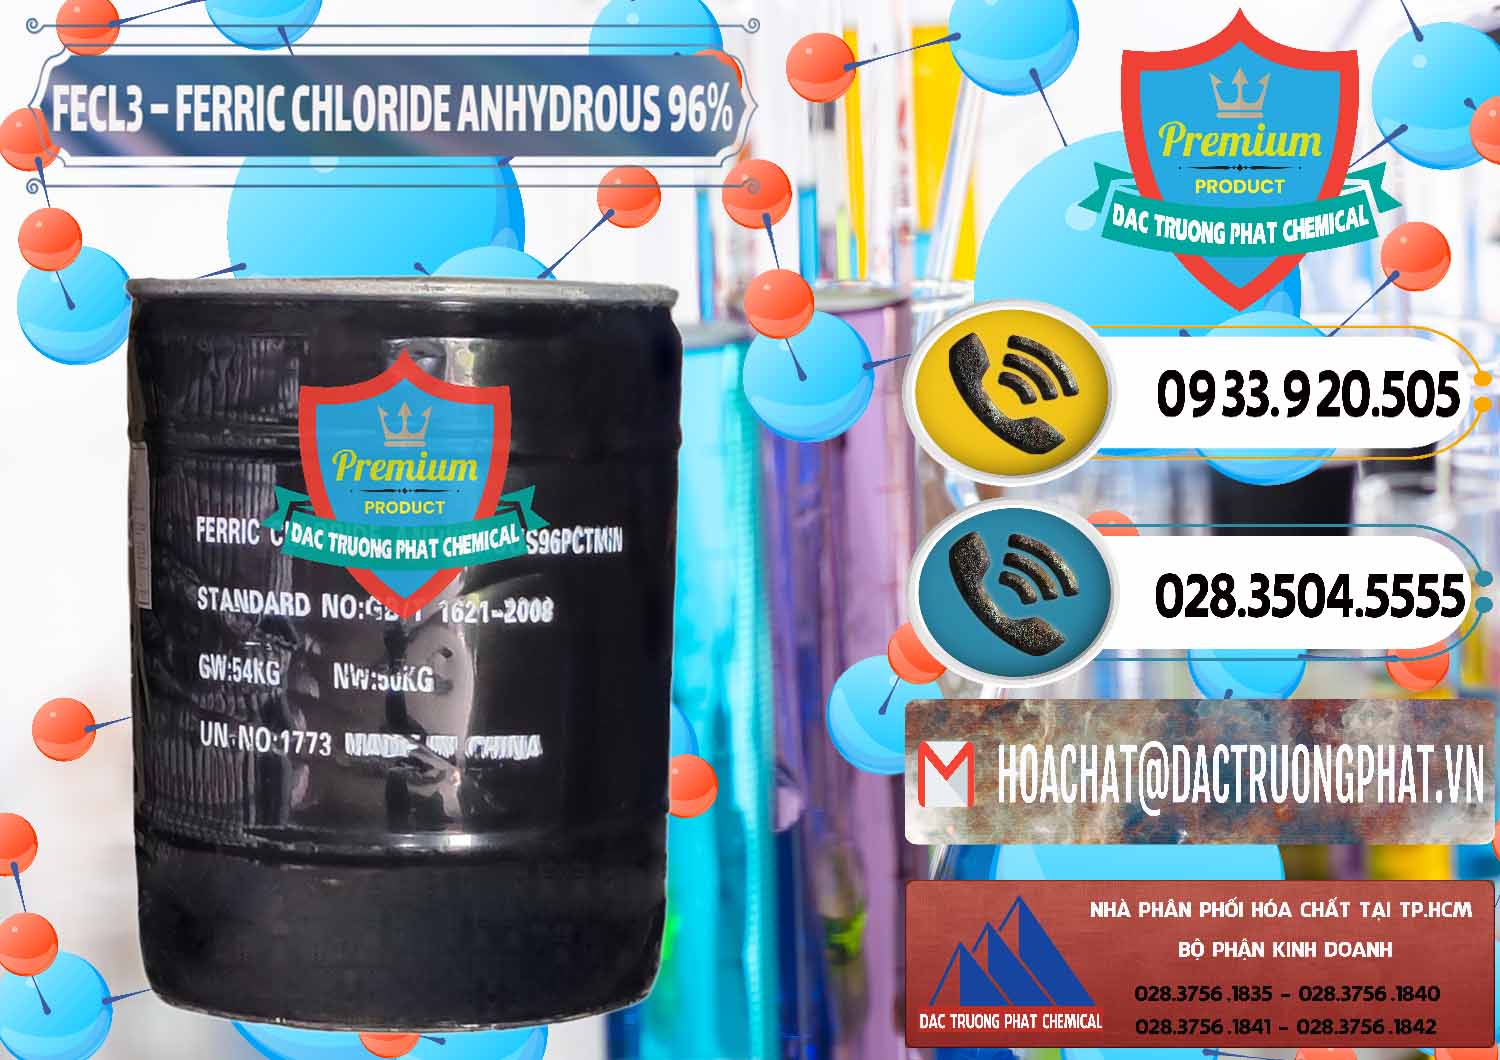 Công ty chuyên phân phối _ bán FECL3 – Ferric Chloride Anhydrous 96% Trung Quốc China - 0065 - Nơi chuyên phân phối và cung ứng hóa chất tại TP.HCM - hoachatdetnhuom.vn